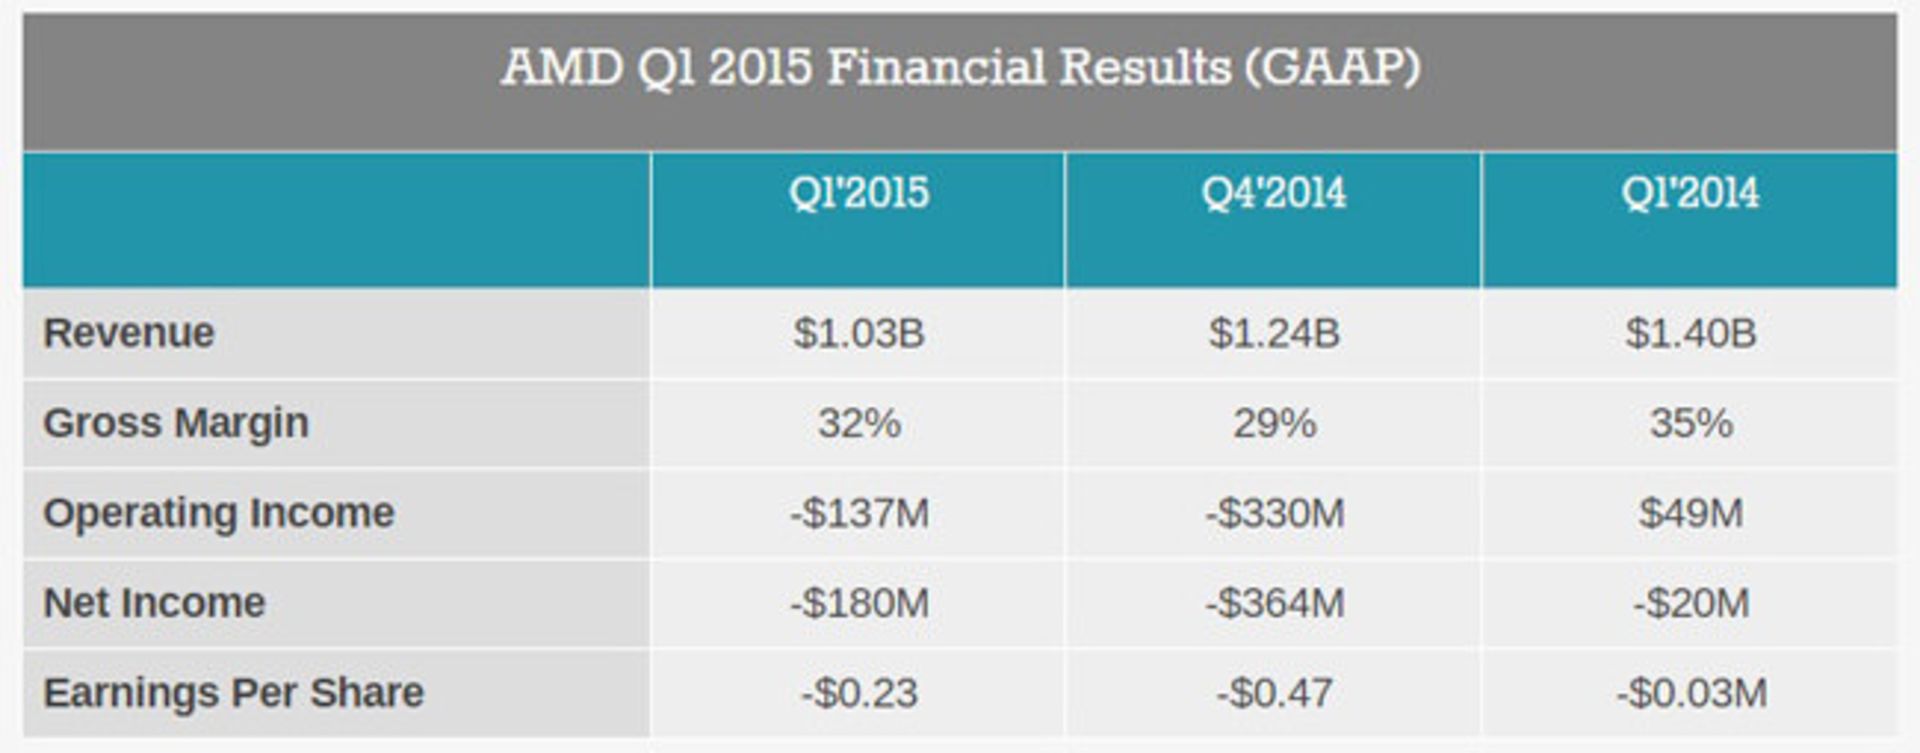 گزارش مالی سه ماهه‌ی اول 2015 رسمی AMD